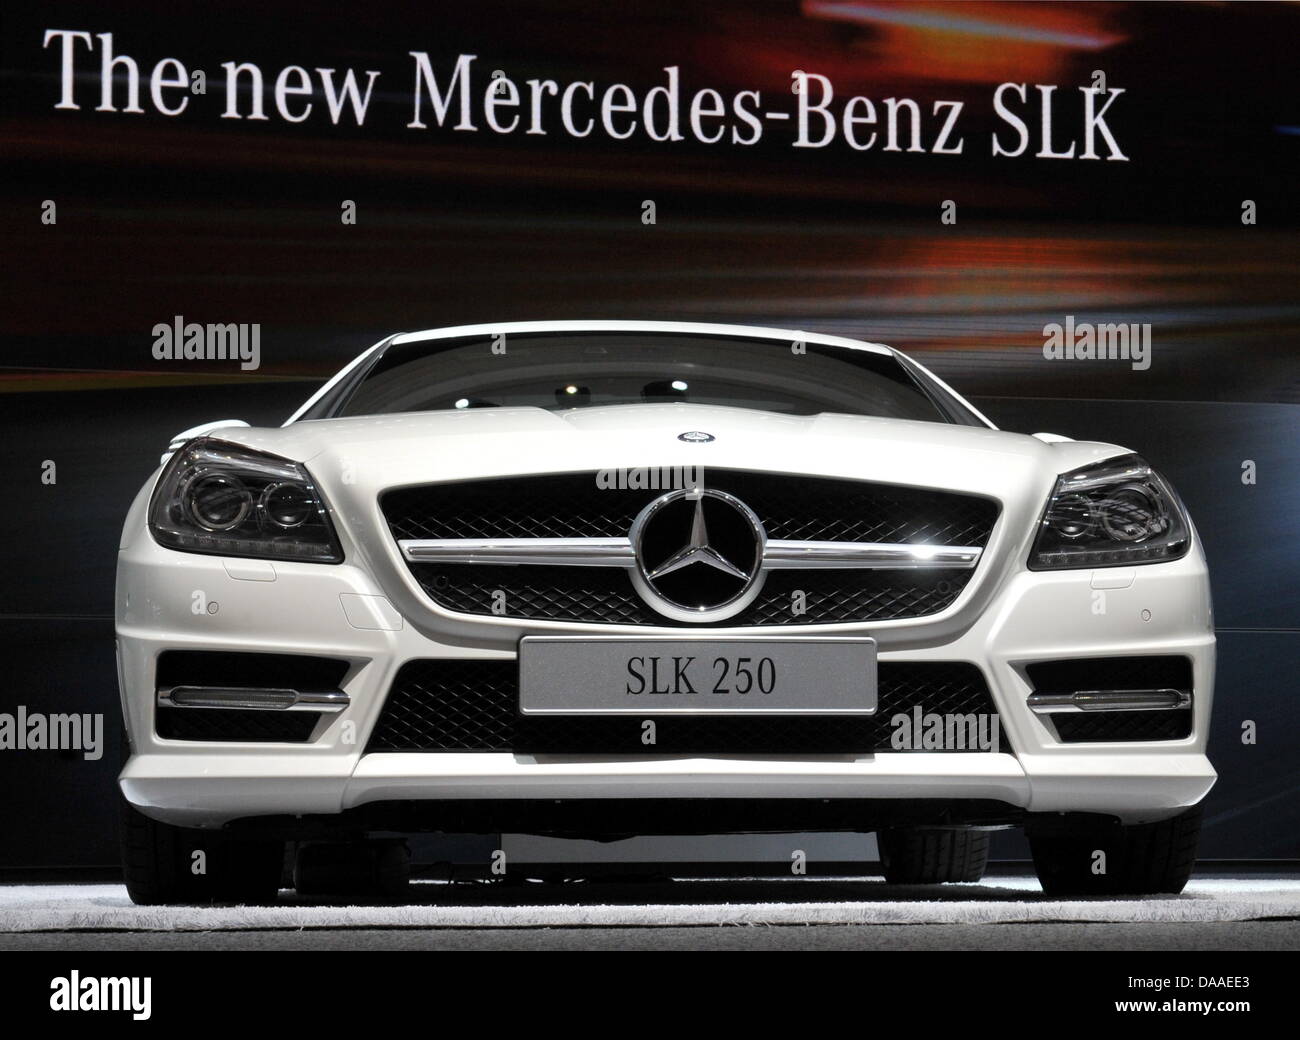 La nuova Mercedes SLK auto sportiva è rivelato presso la fabbrica di Mercedes vicino a Stoccarda, Germania, 29 gennaio 2011. Questa è la terza generazione della cabriolet auto sportiva. Foto: BERND WEISSBROD Foto Stock